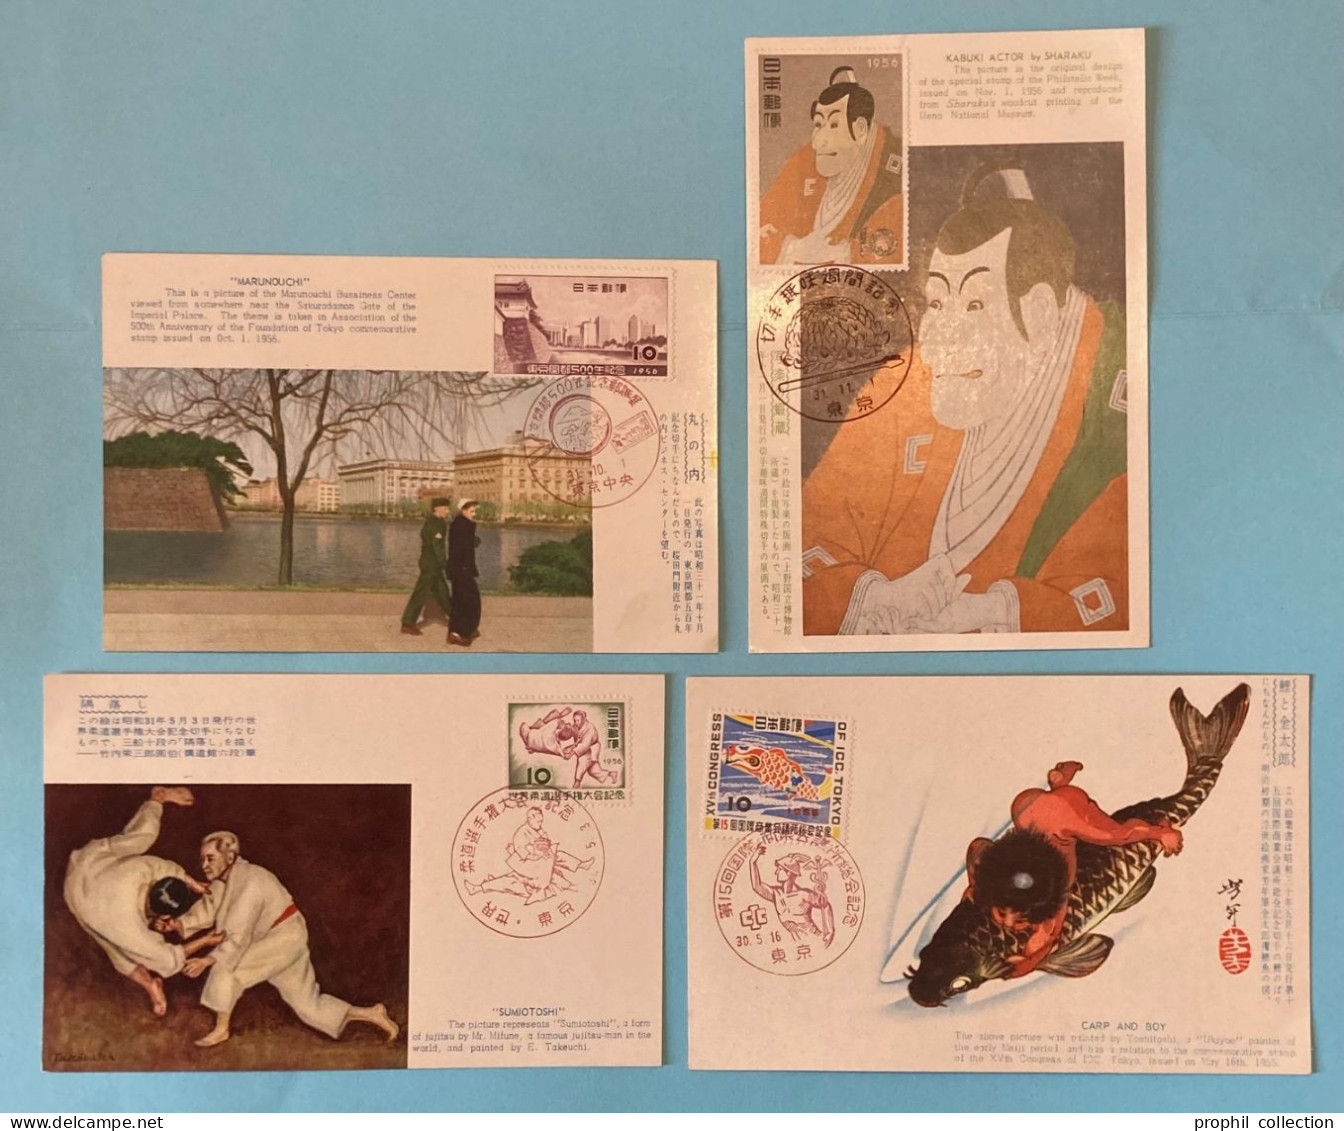 LOT De 4 CARTES MAXIMUM MAX Du JAPON JAPAN JAPONESE CARDS De 1955 1956 - Maximumkaarten